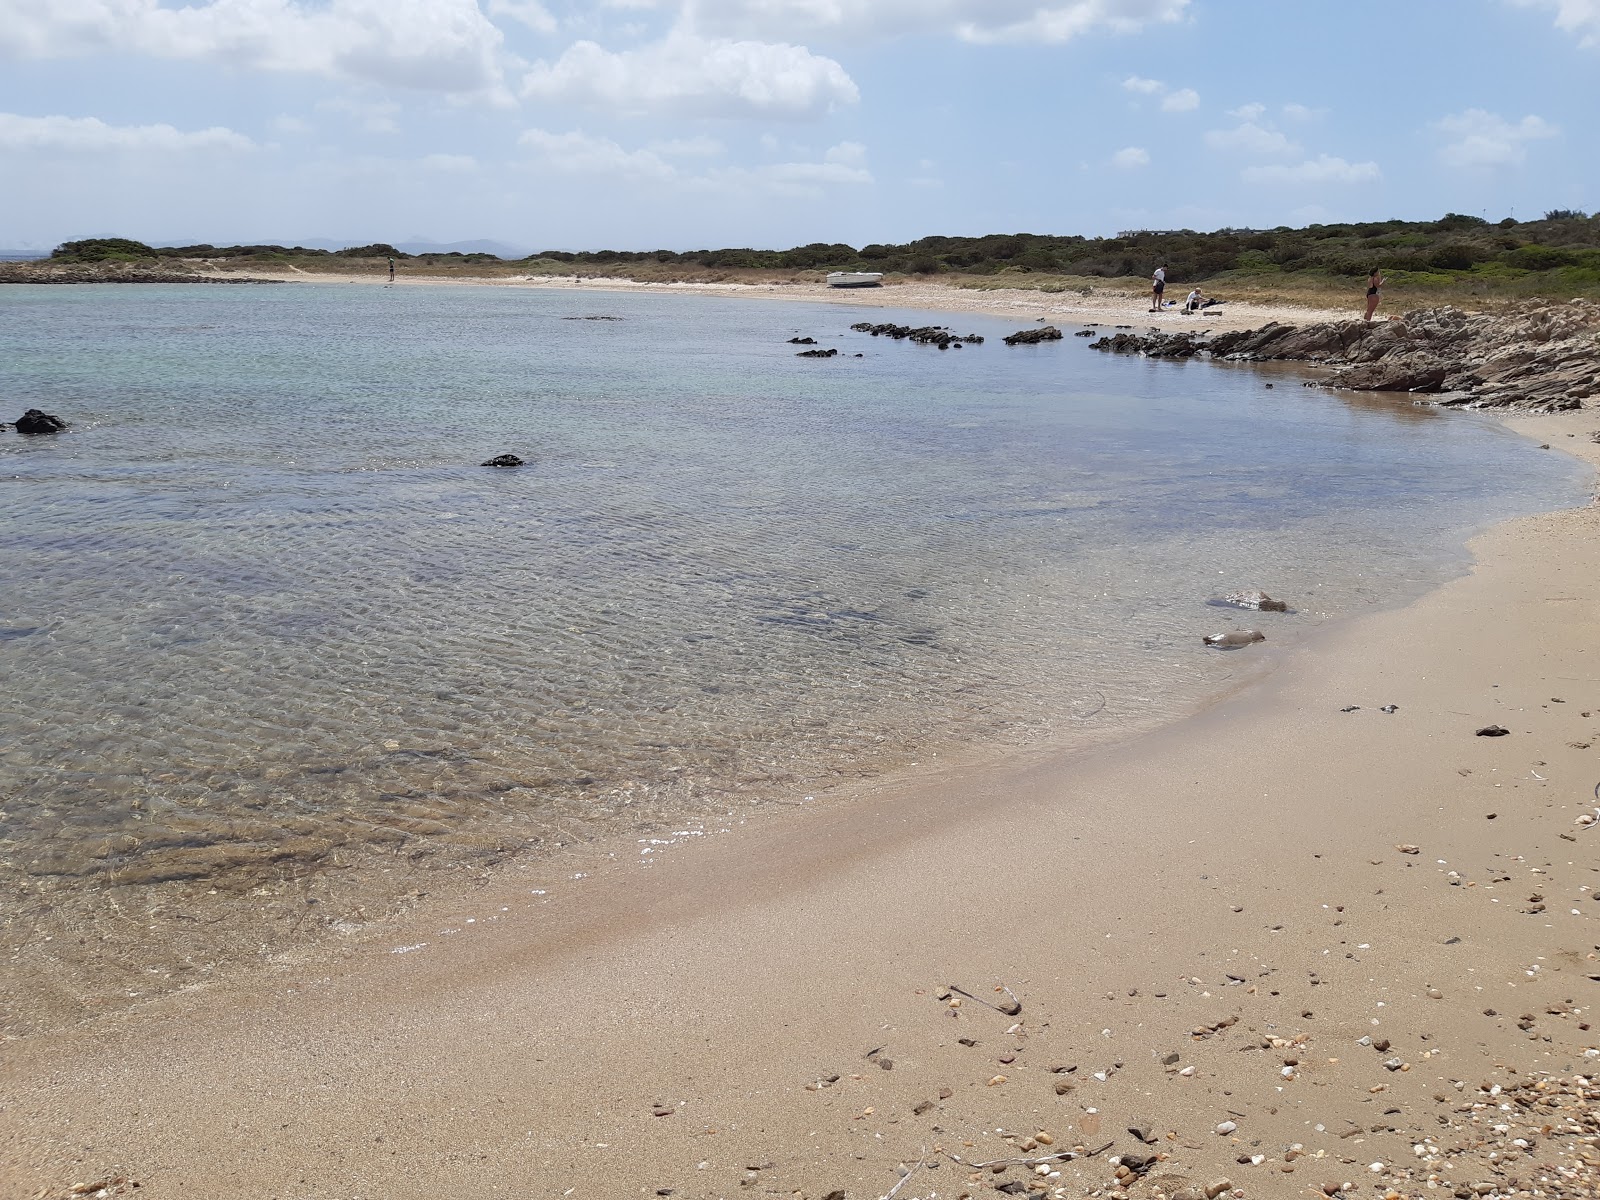 Foto av Spiaggia Punta Negra med turkos rent vatten yta